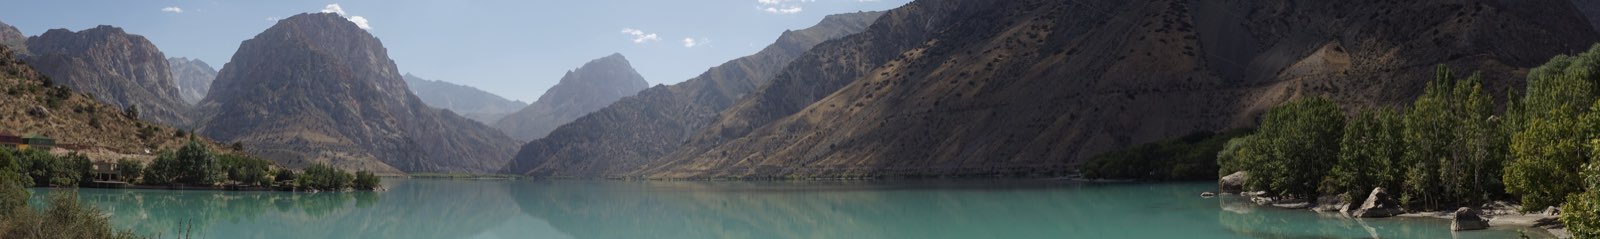 Iskanderkul lake panorama